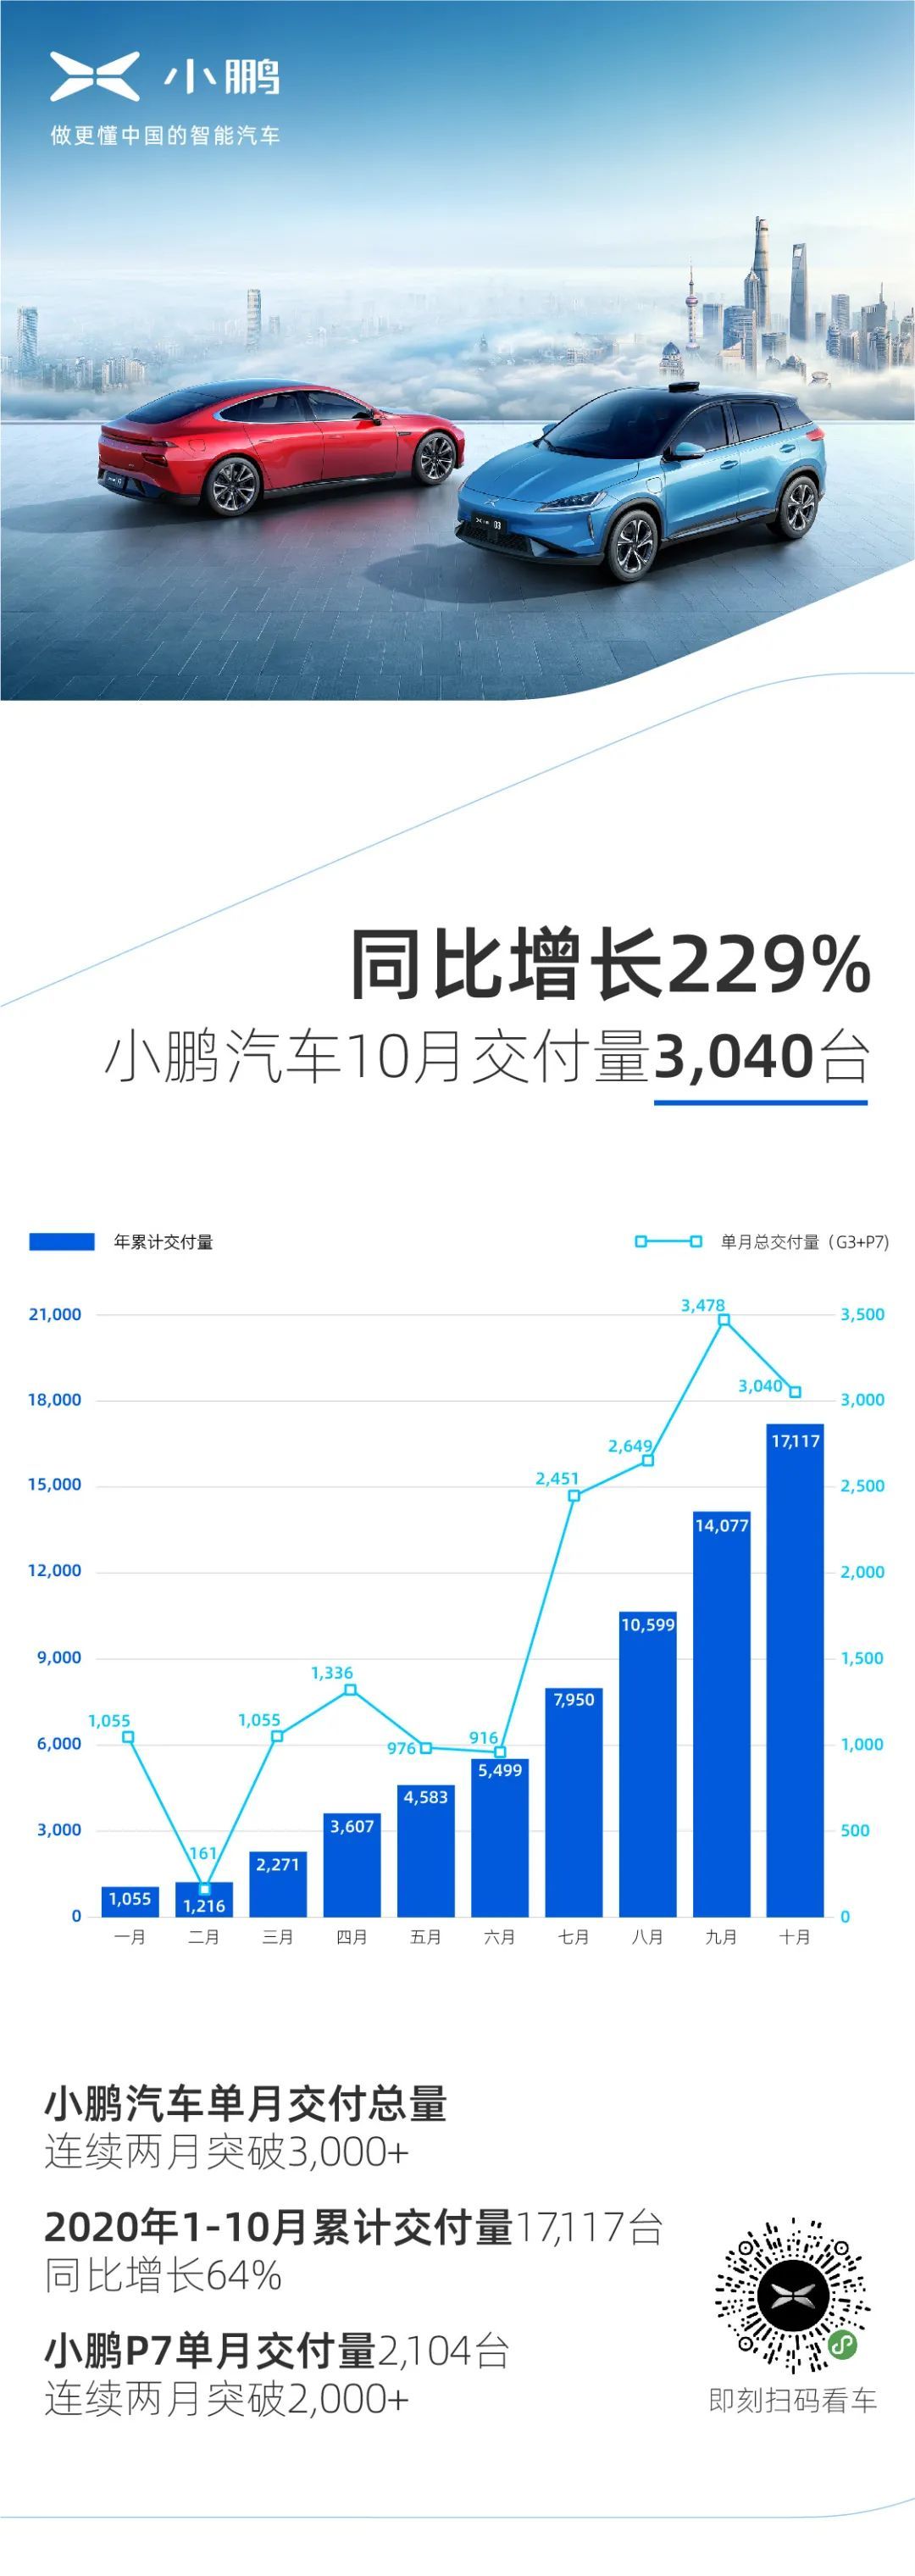 В октябре компания Xpeng Motors поставила 3040 единиц, что на 229% больше, чем в прошлом году.